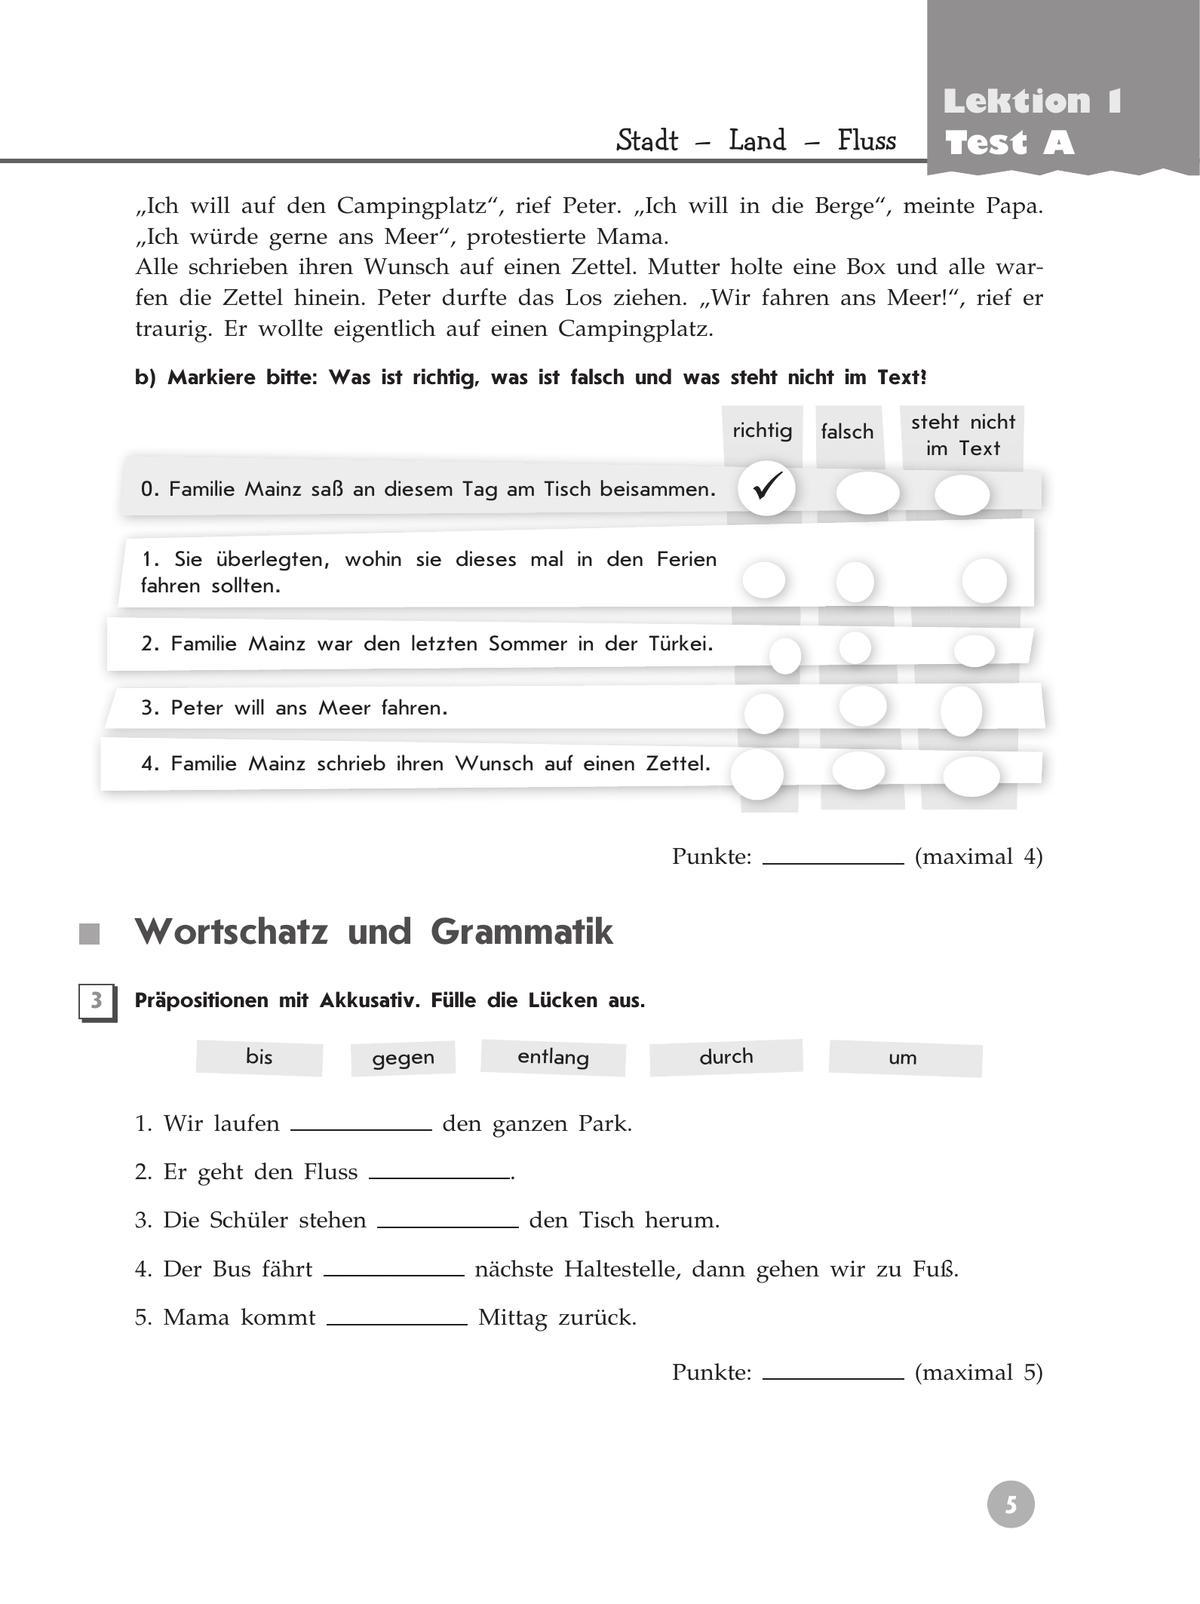 Немецкий язык. Контрольные задания. 5 класс 9